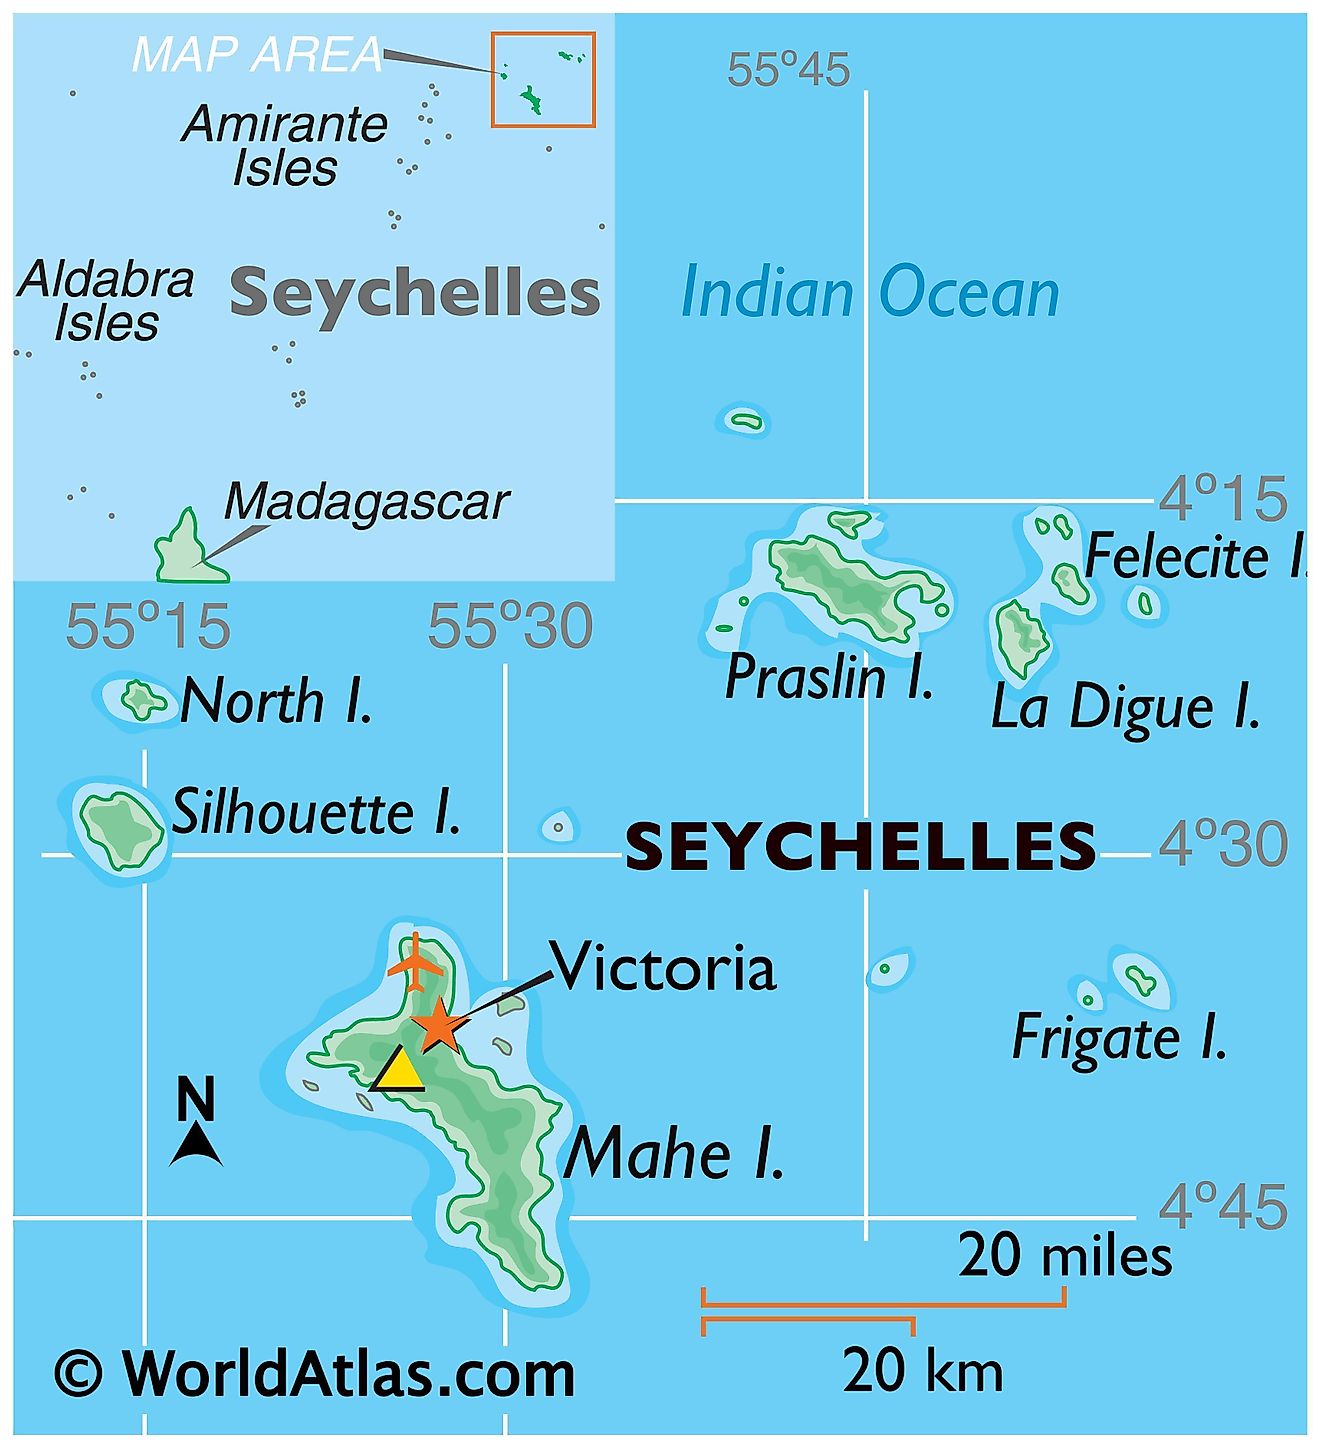 Mapa físico de Seychelles con límites estatales. Muestra las principales características físicas de Seychelles, incluidas las islas principales, el terreno y los territorios extranjeros más cercanos.